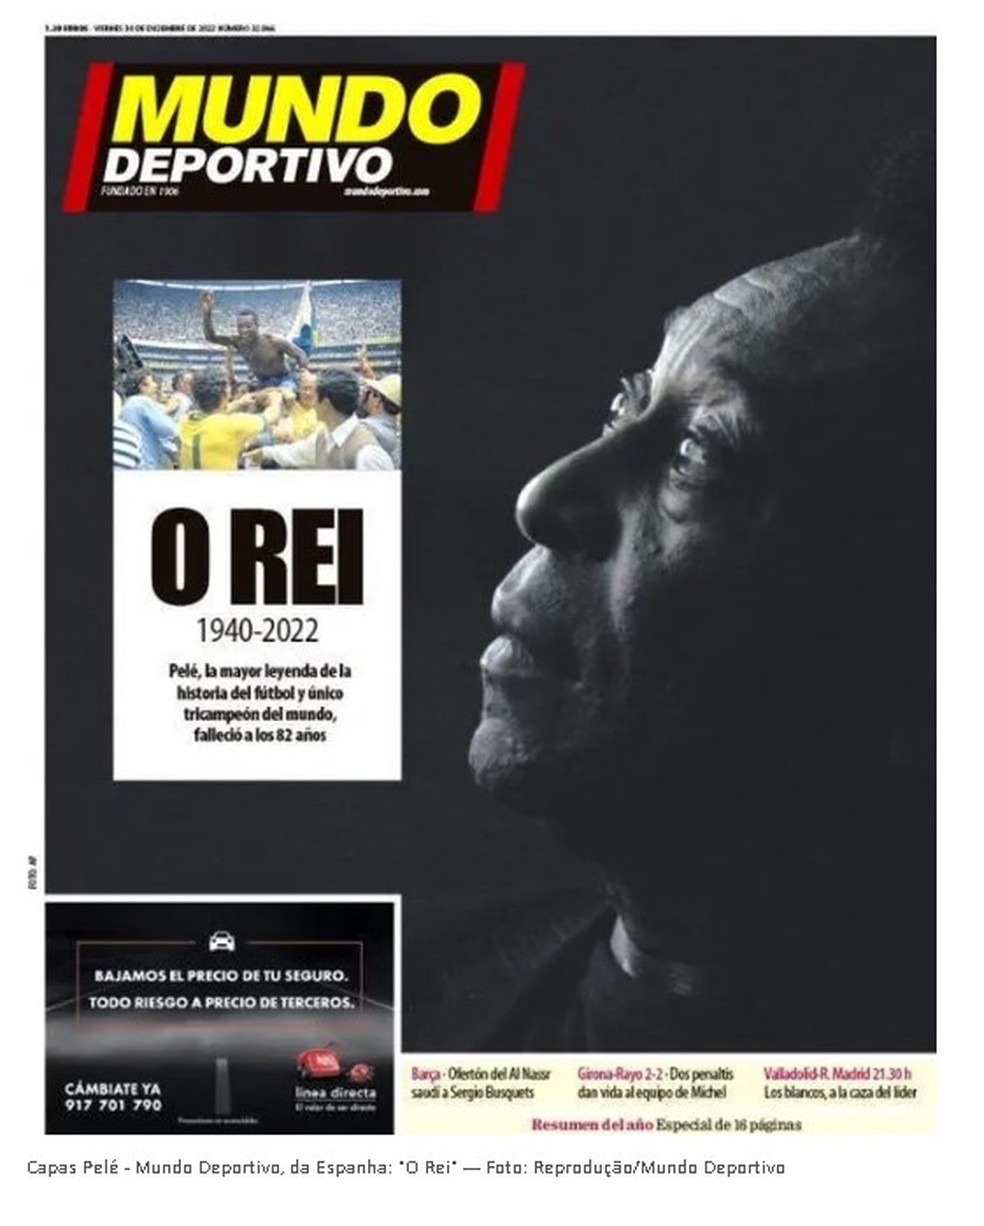 No espanhol Mundo Deportivo, o olhar de Pelé para sua glória — Foto: Reprodução